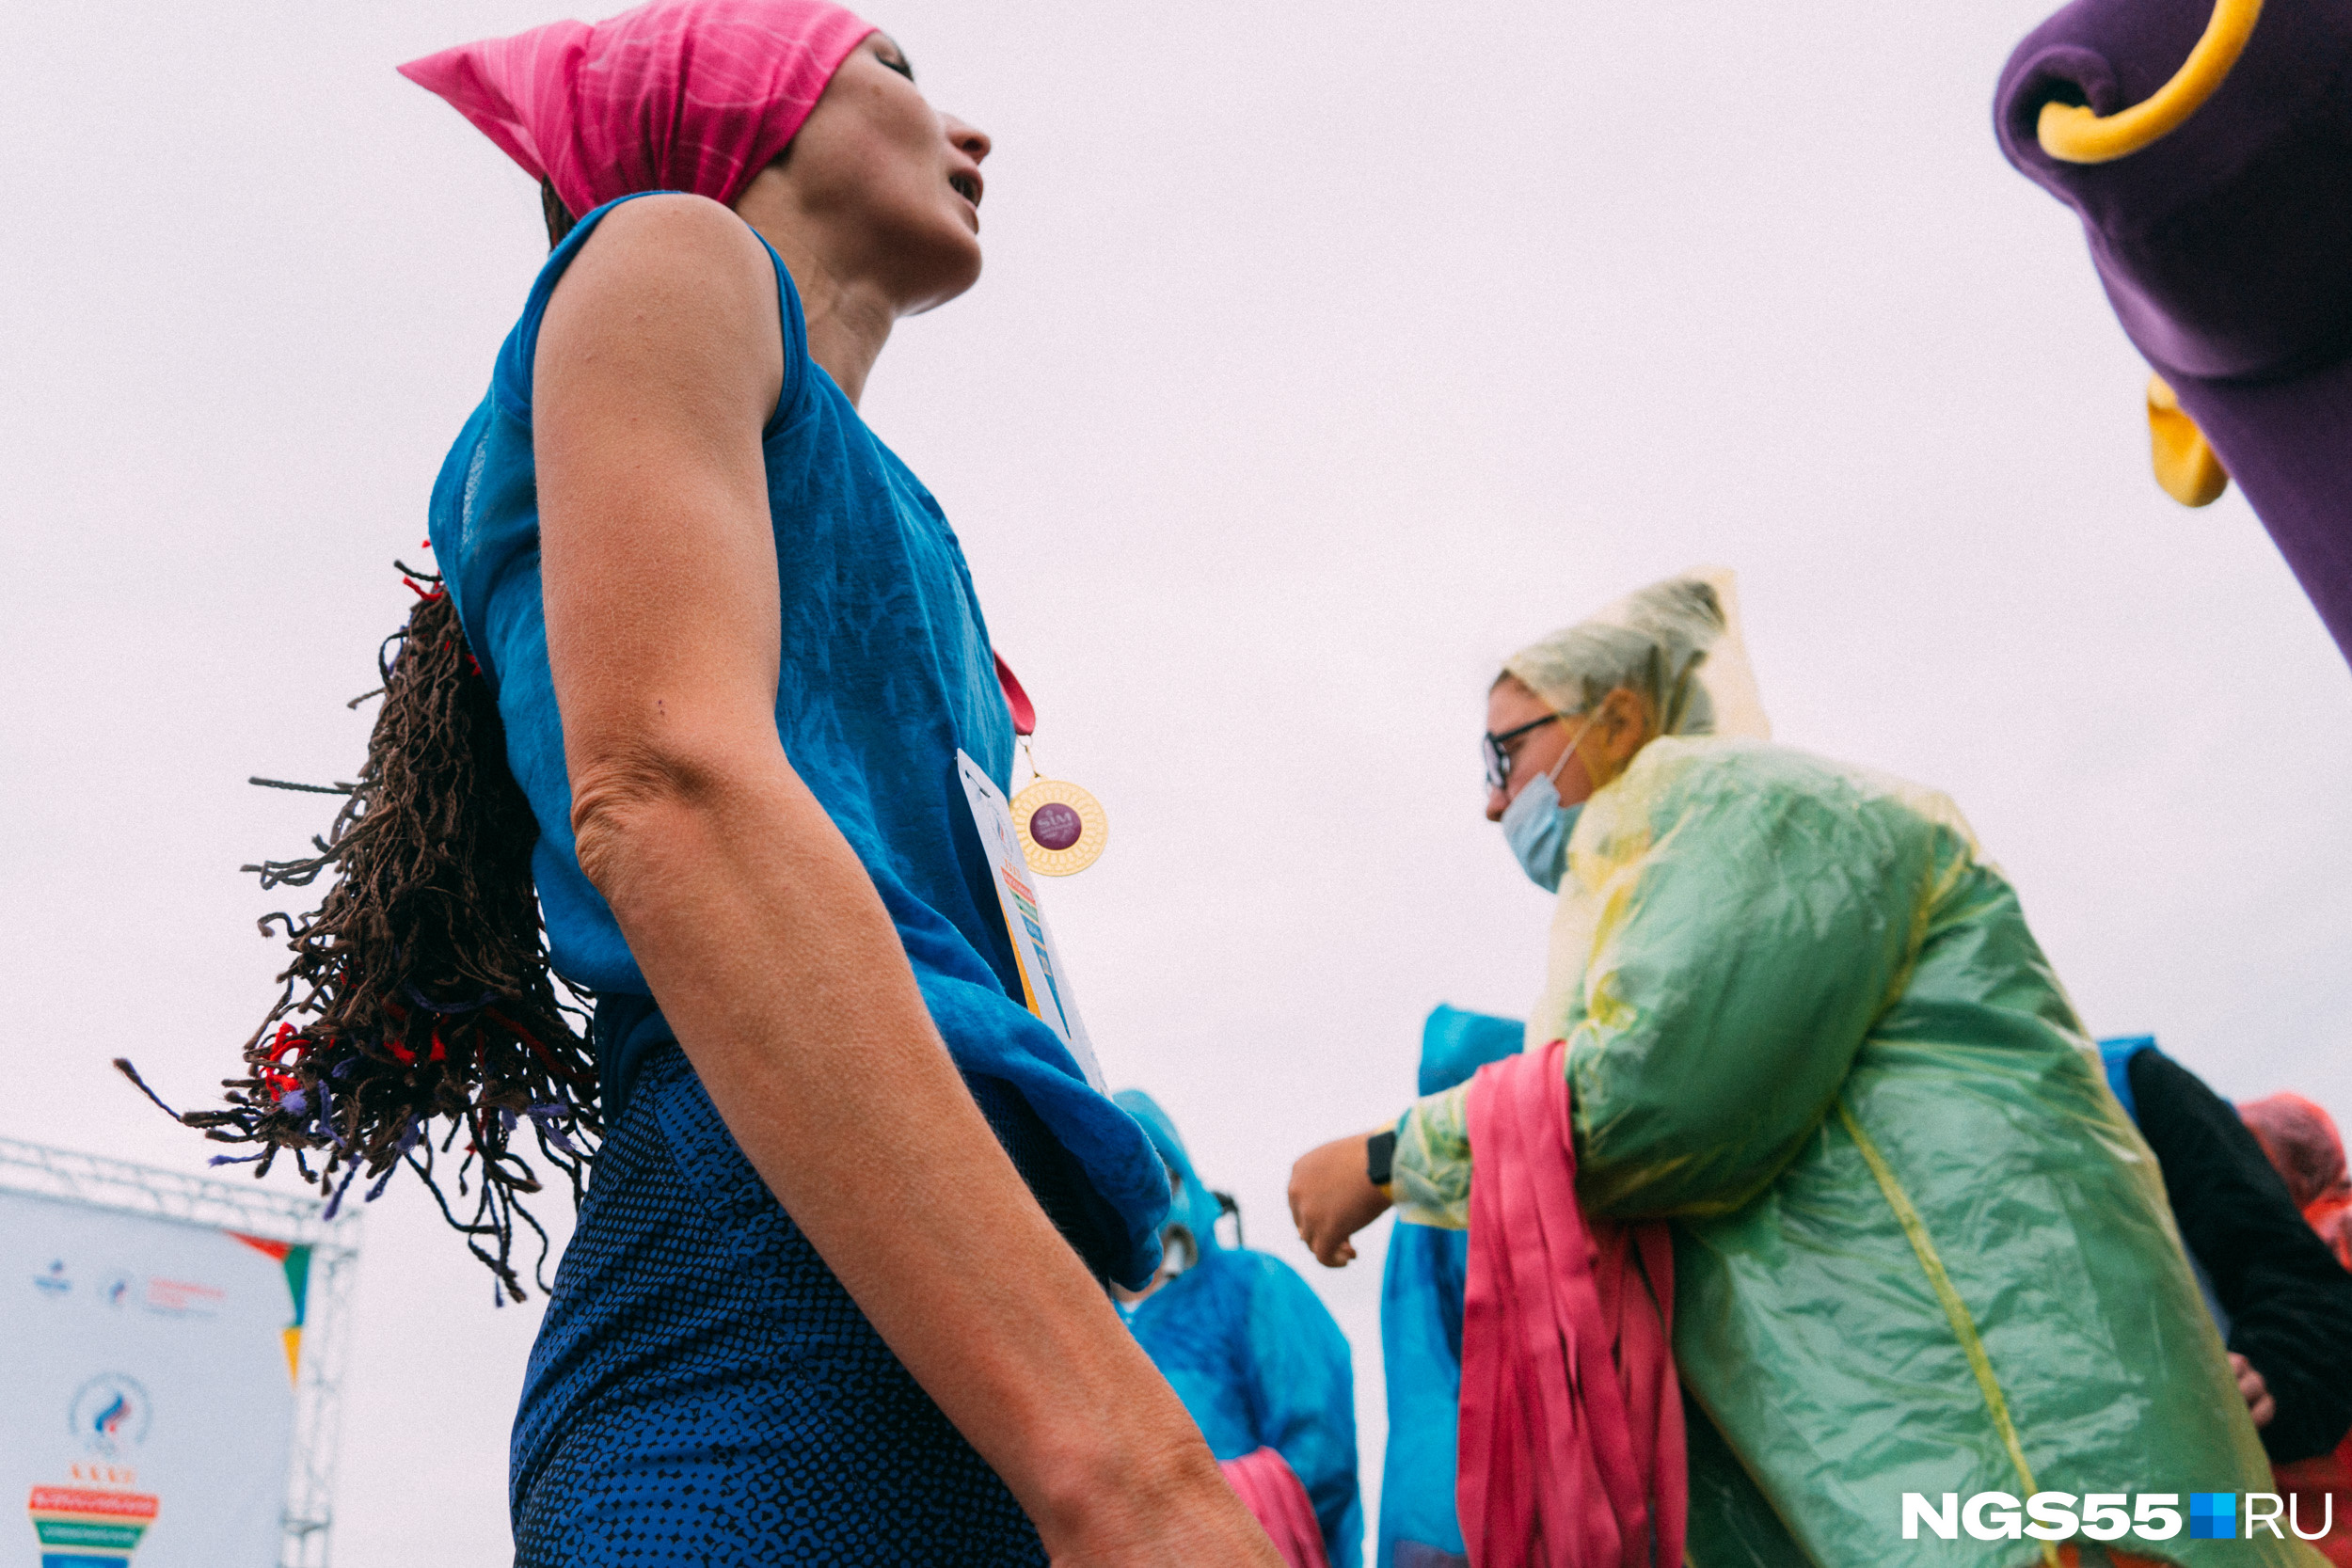 Организаторы в дождевиках, куртках и масках смотрятся очень контрастно на фоне легко одетых спортсменок